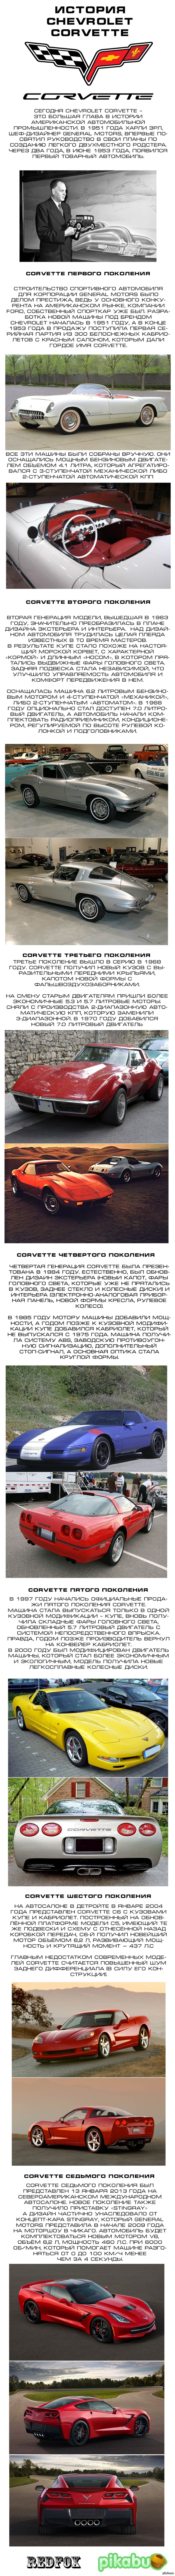  Chevrolet Corvette 